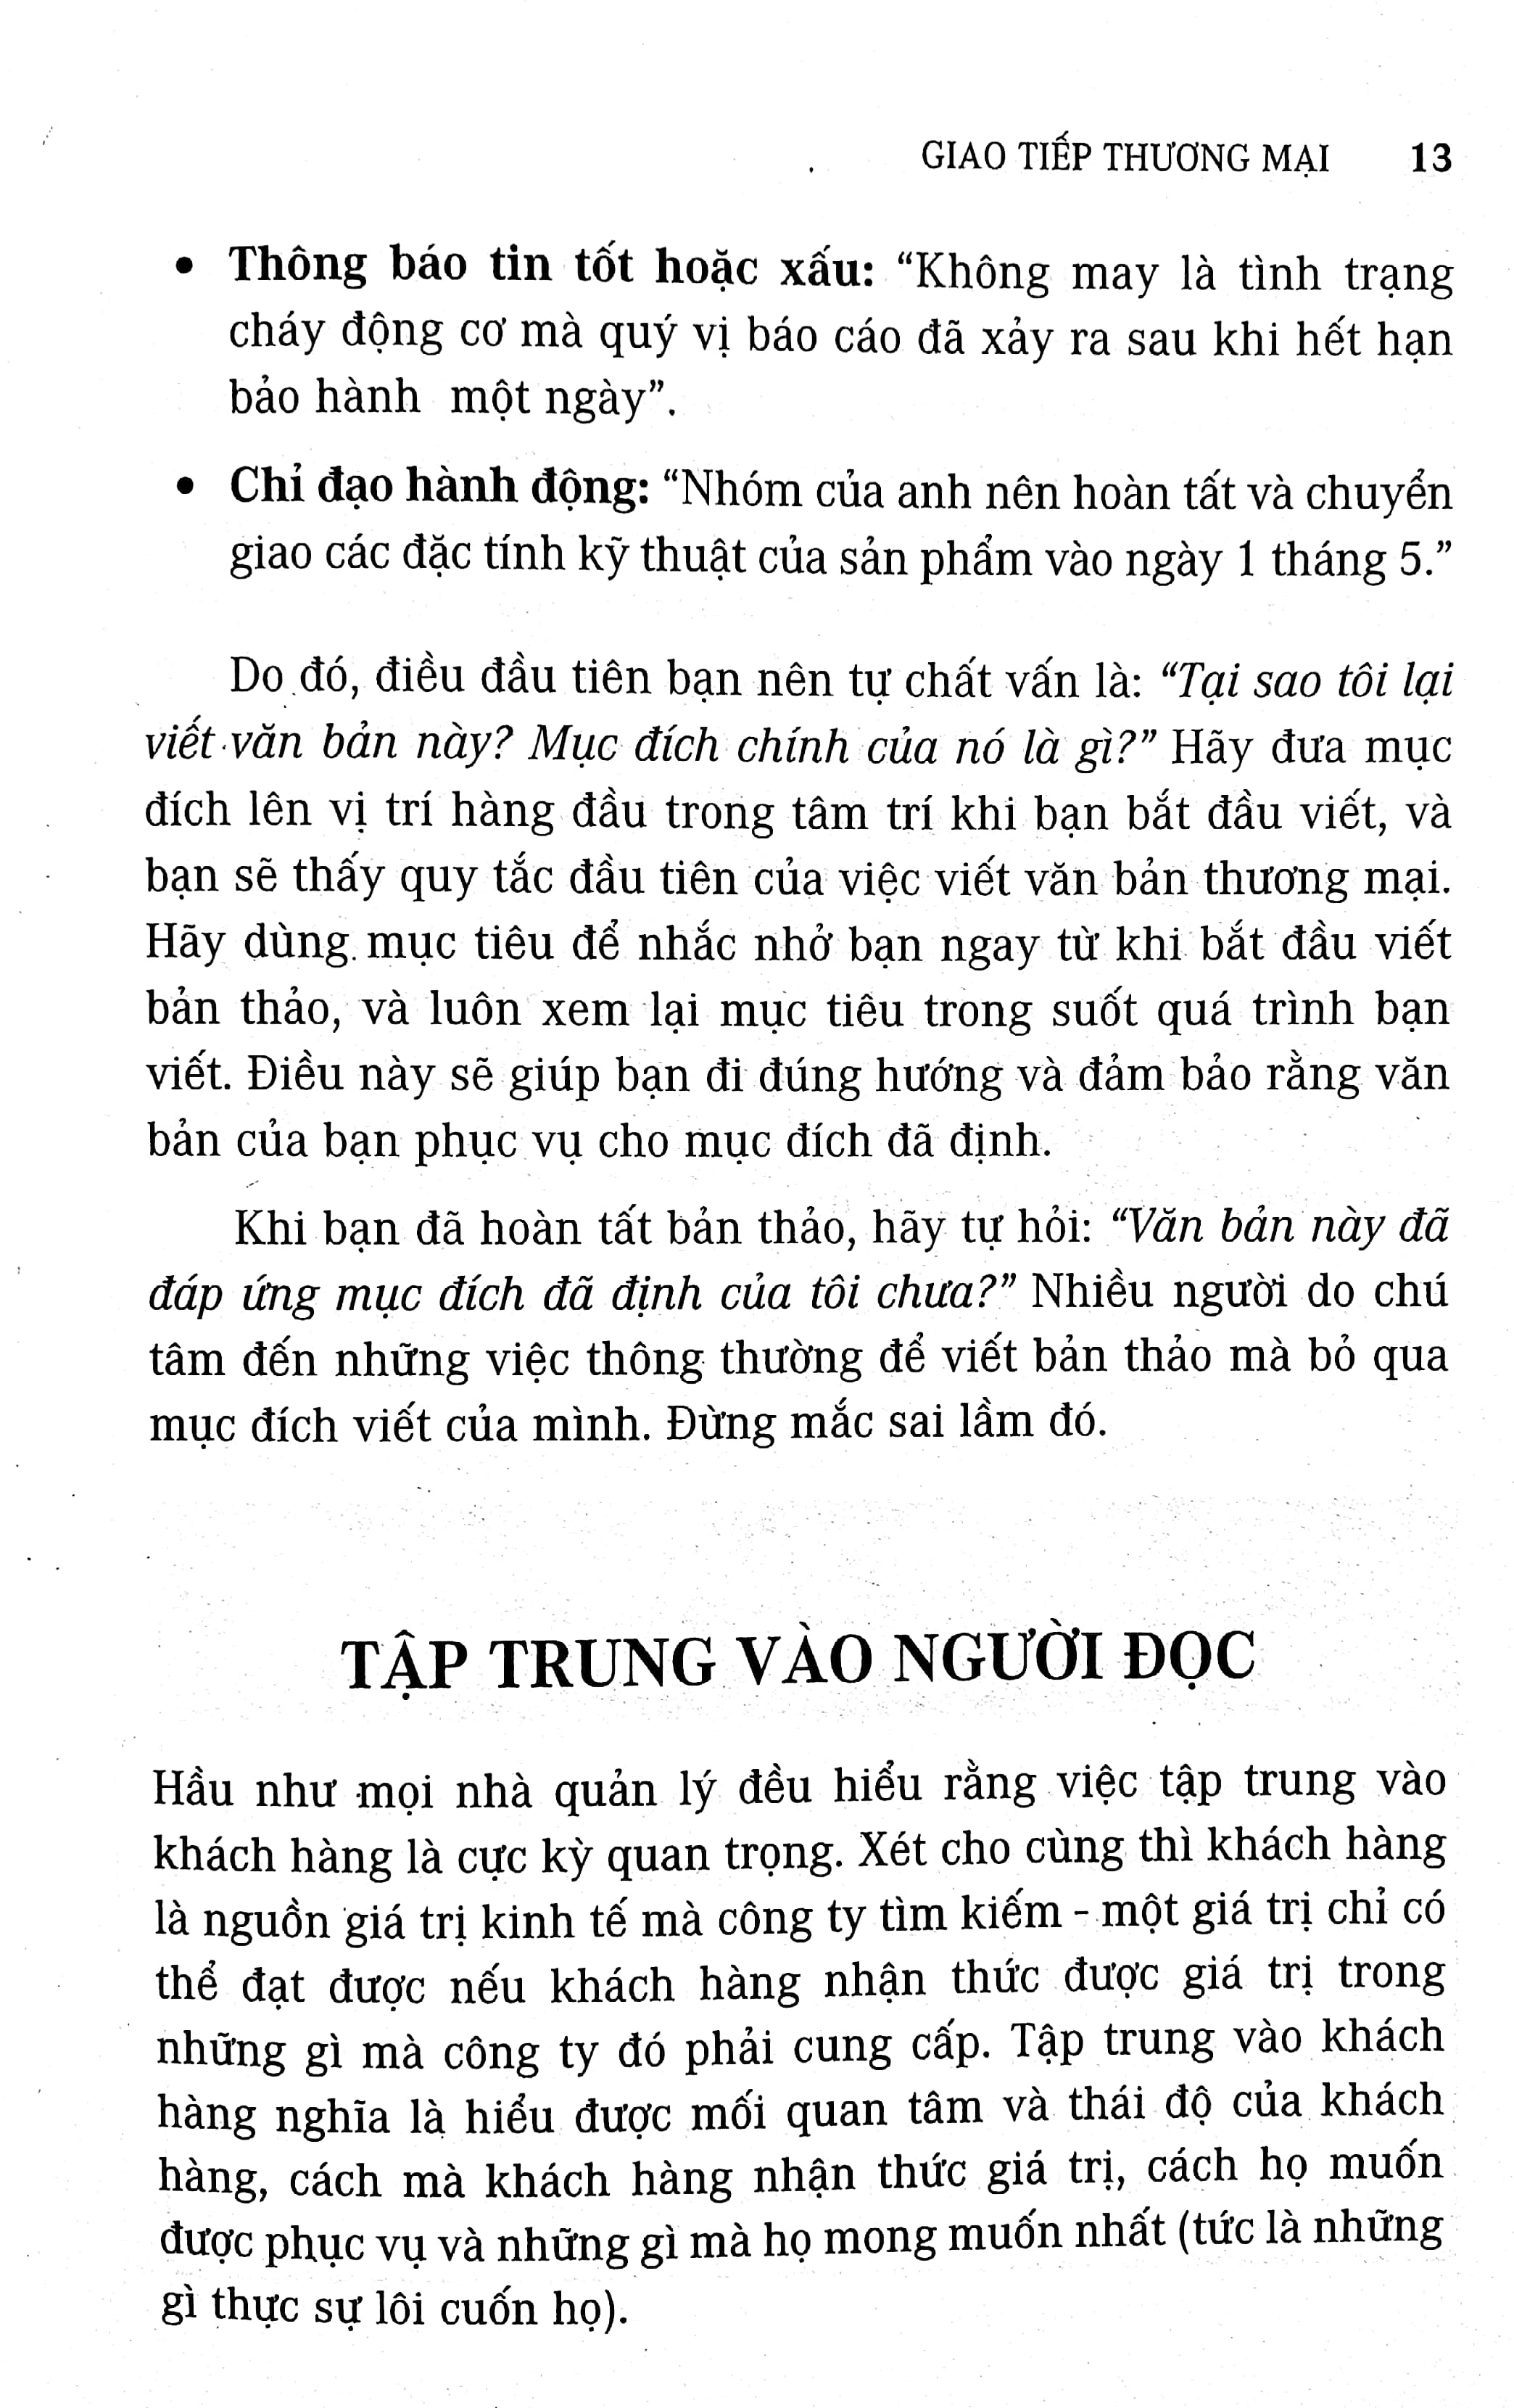 Cẩm Nang Kinh Doanh - Giao Tiếp Thương Mại 2018 PDF